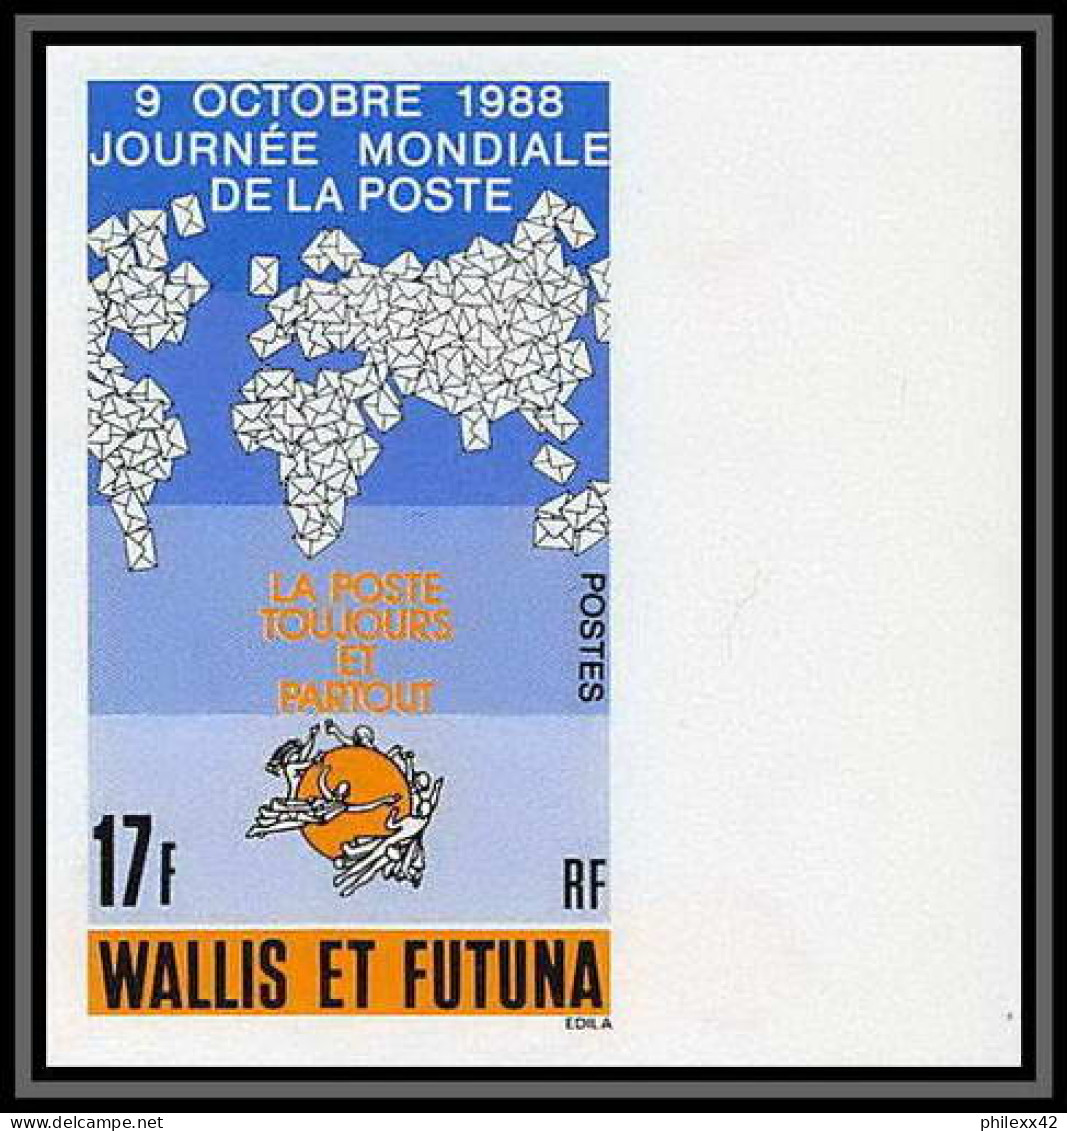 92549a Wallis Et Futuna N°382 UPU Journée Mondiale De La Poste 1988 World Post Day Non Dentelé Imperf ** MNH - Imperforates, Proofs & Errors